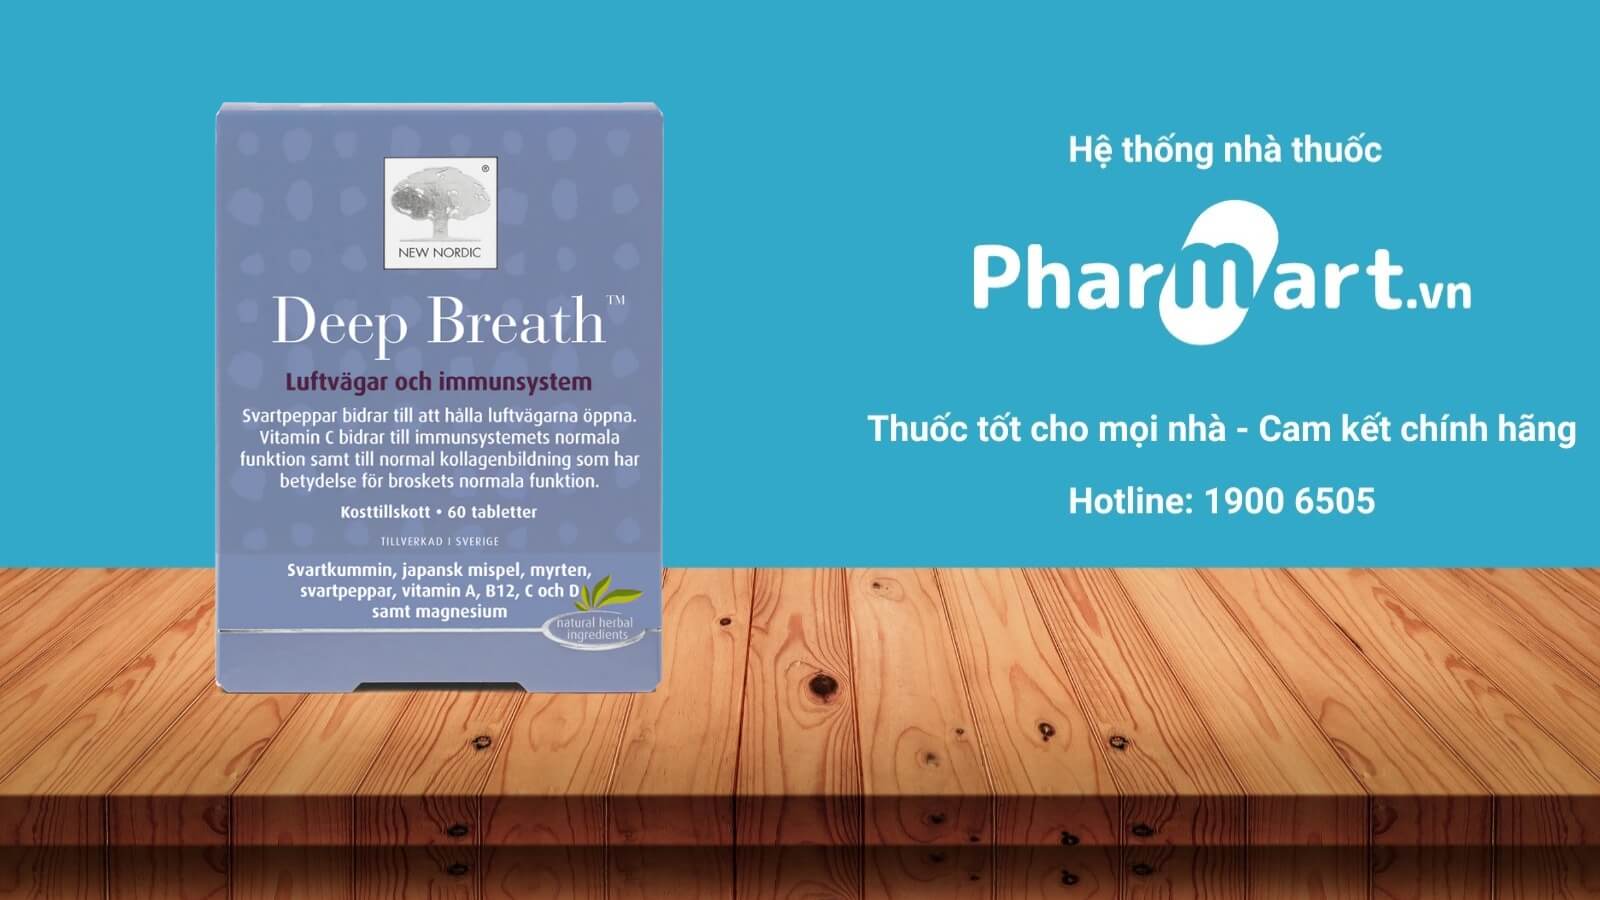 Deep Breath được phân phối chính hãng tại Pharmart.vn